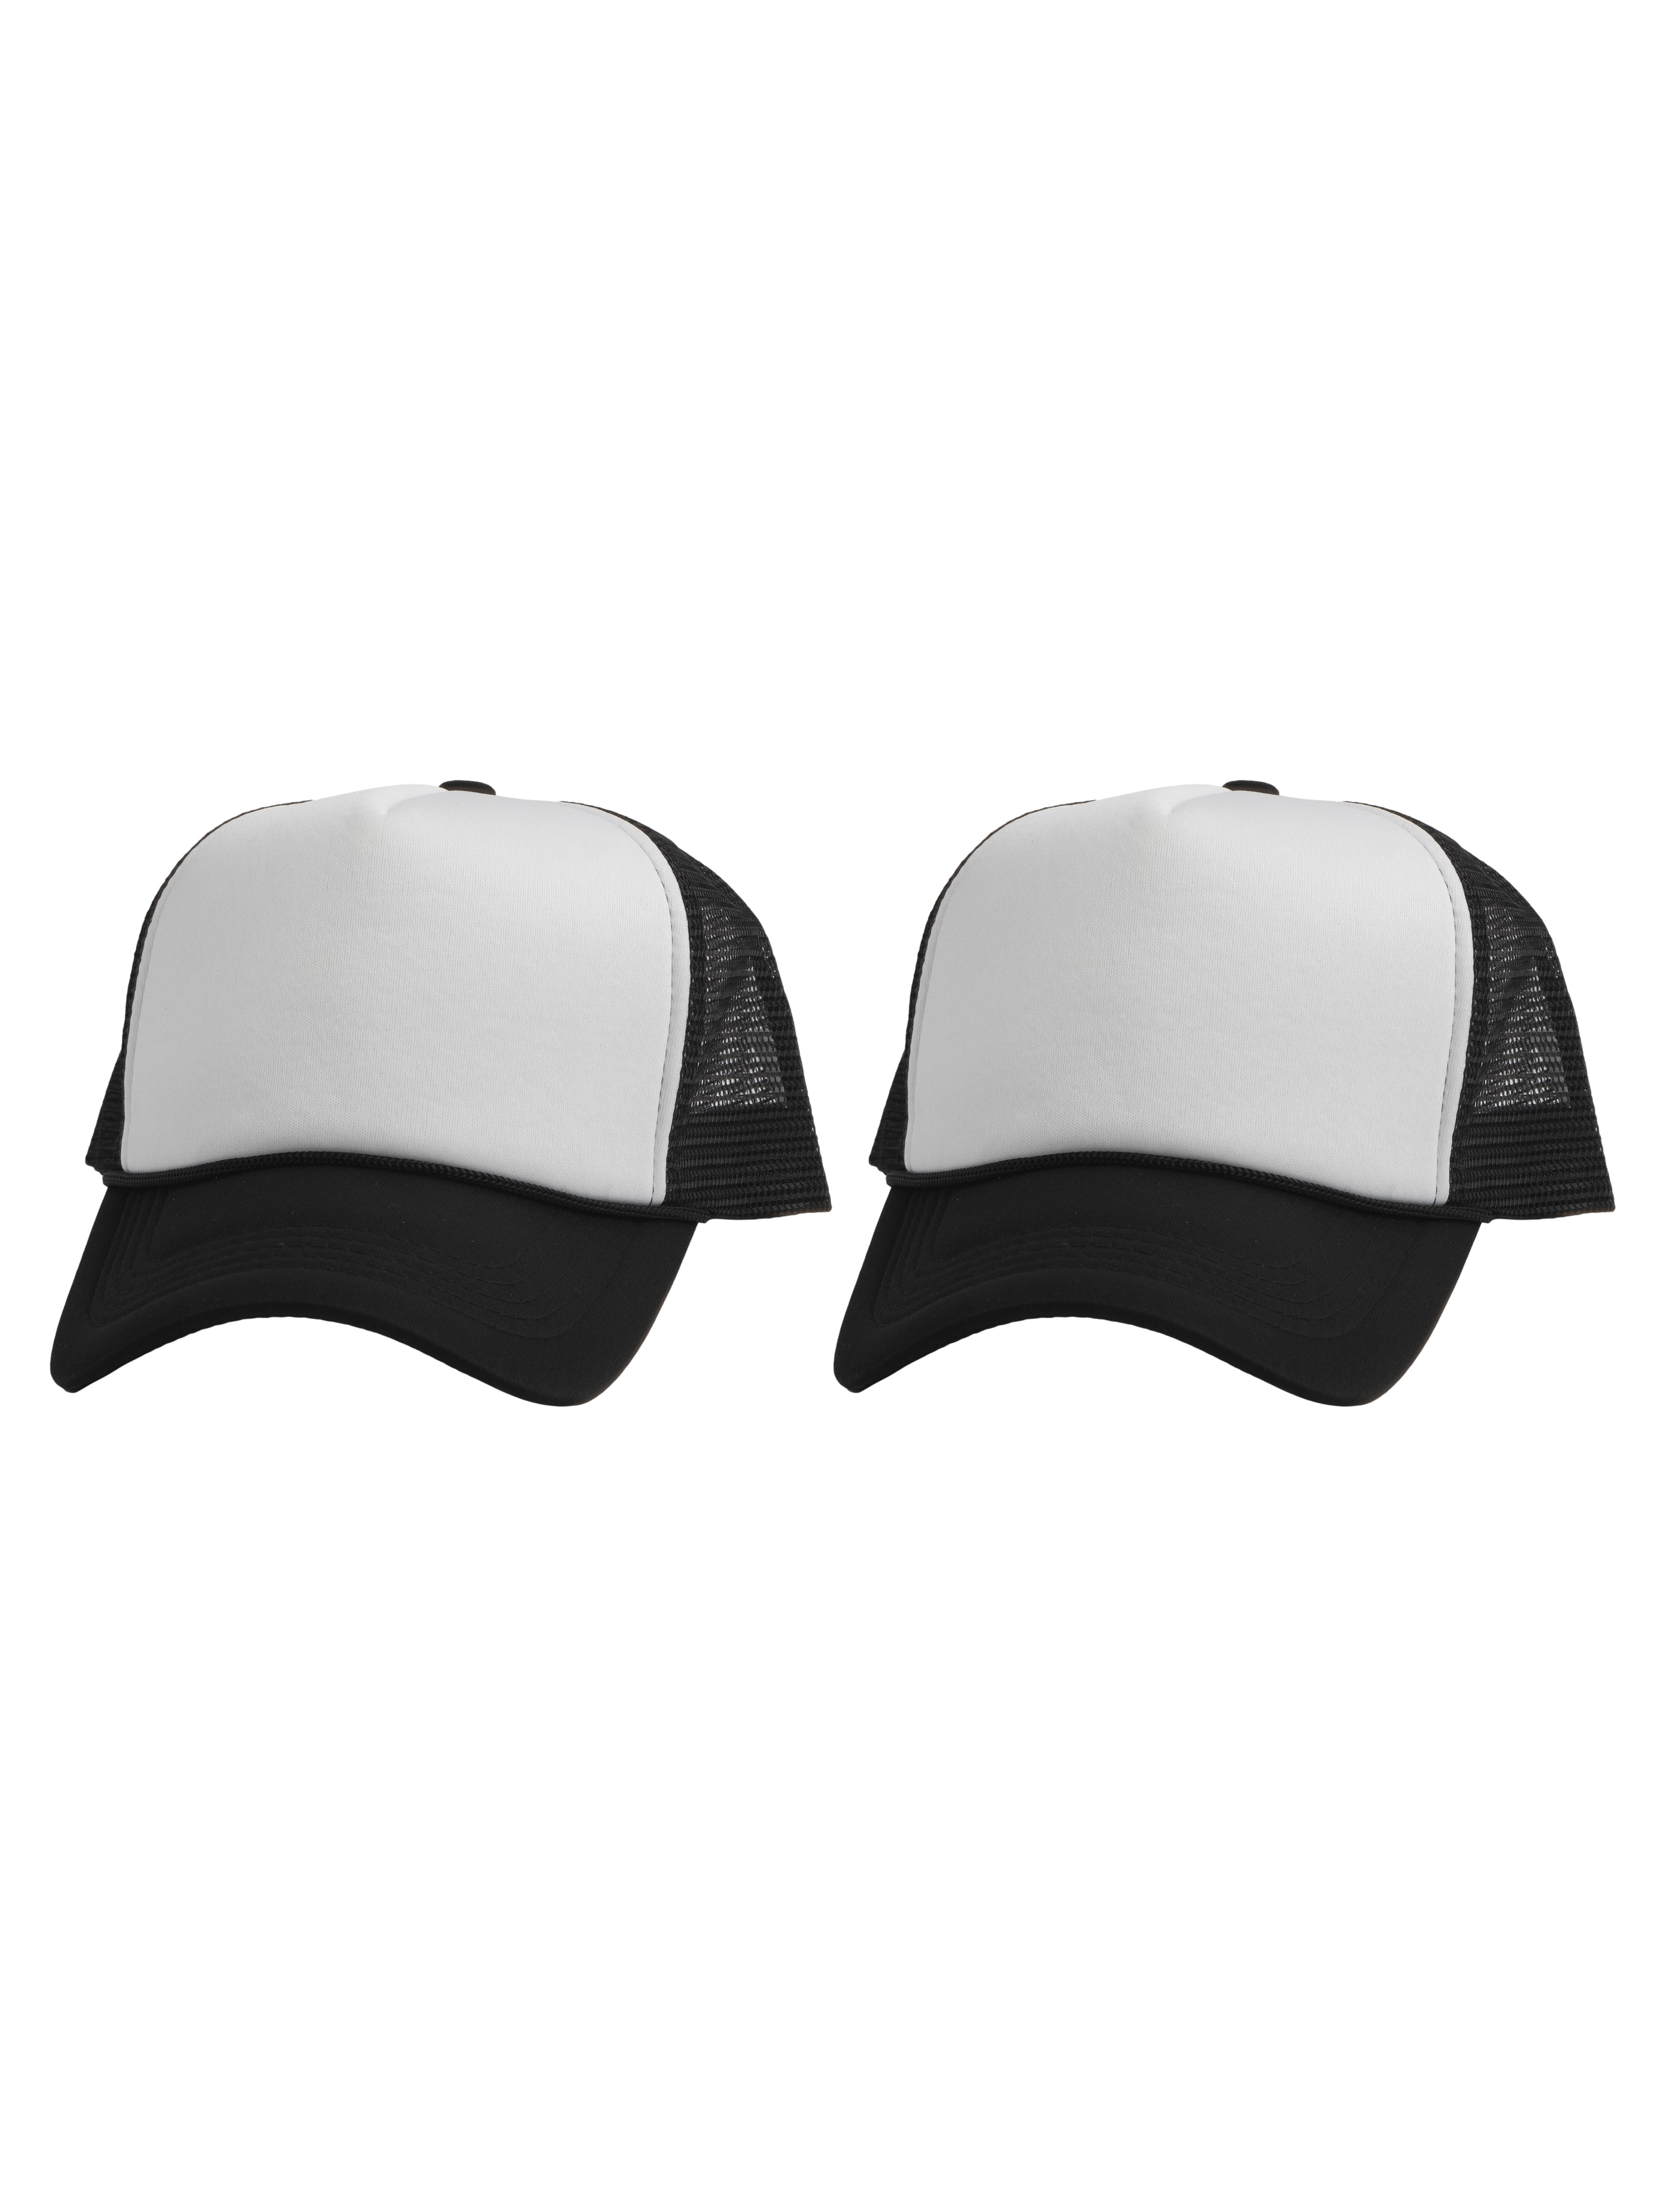 Top Headwear Men's Blank Rope Trucker Foam Mesh Plain Hats, 2PC White/Black